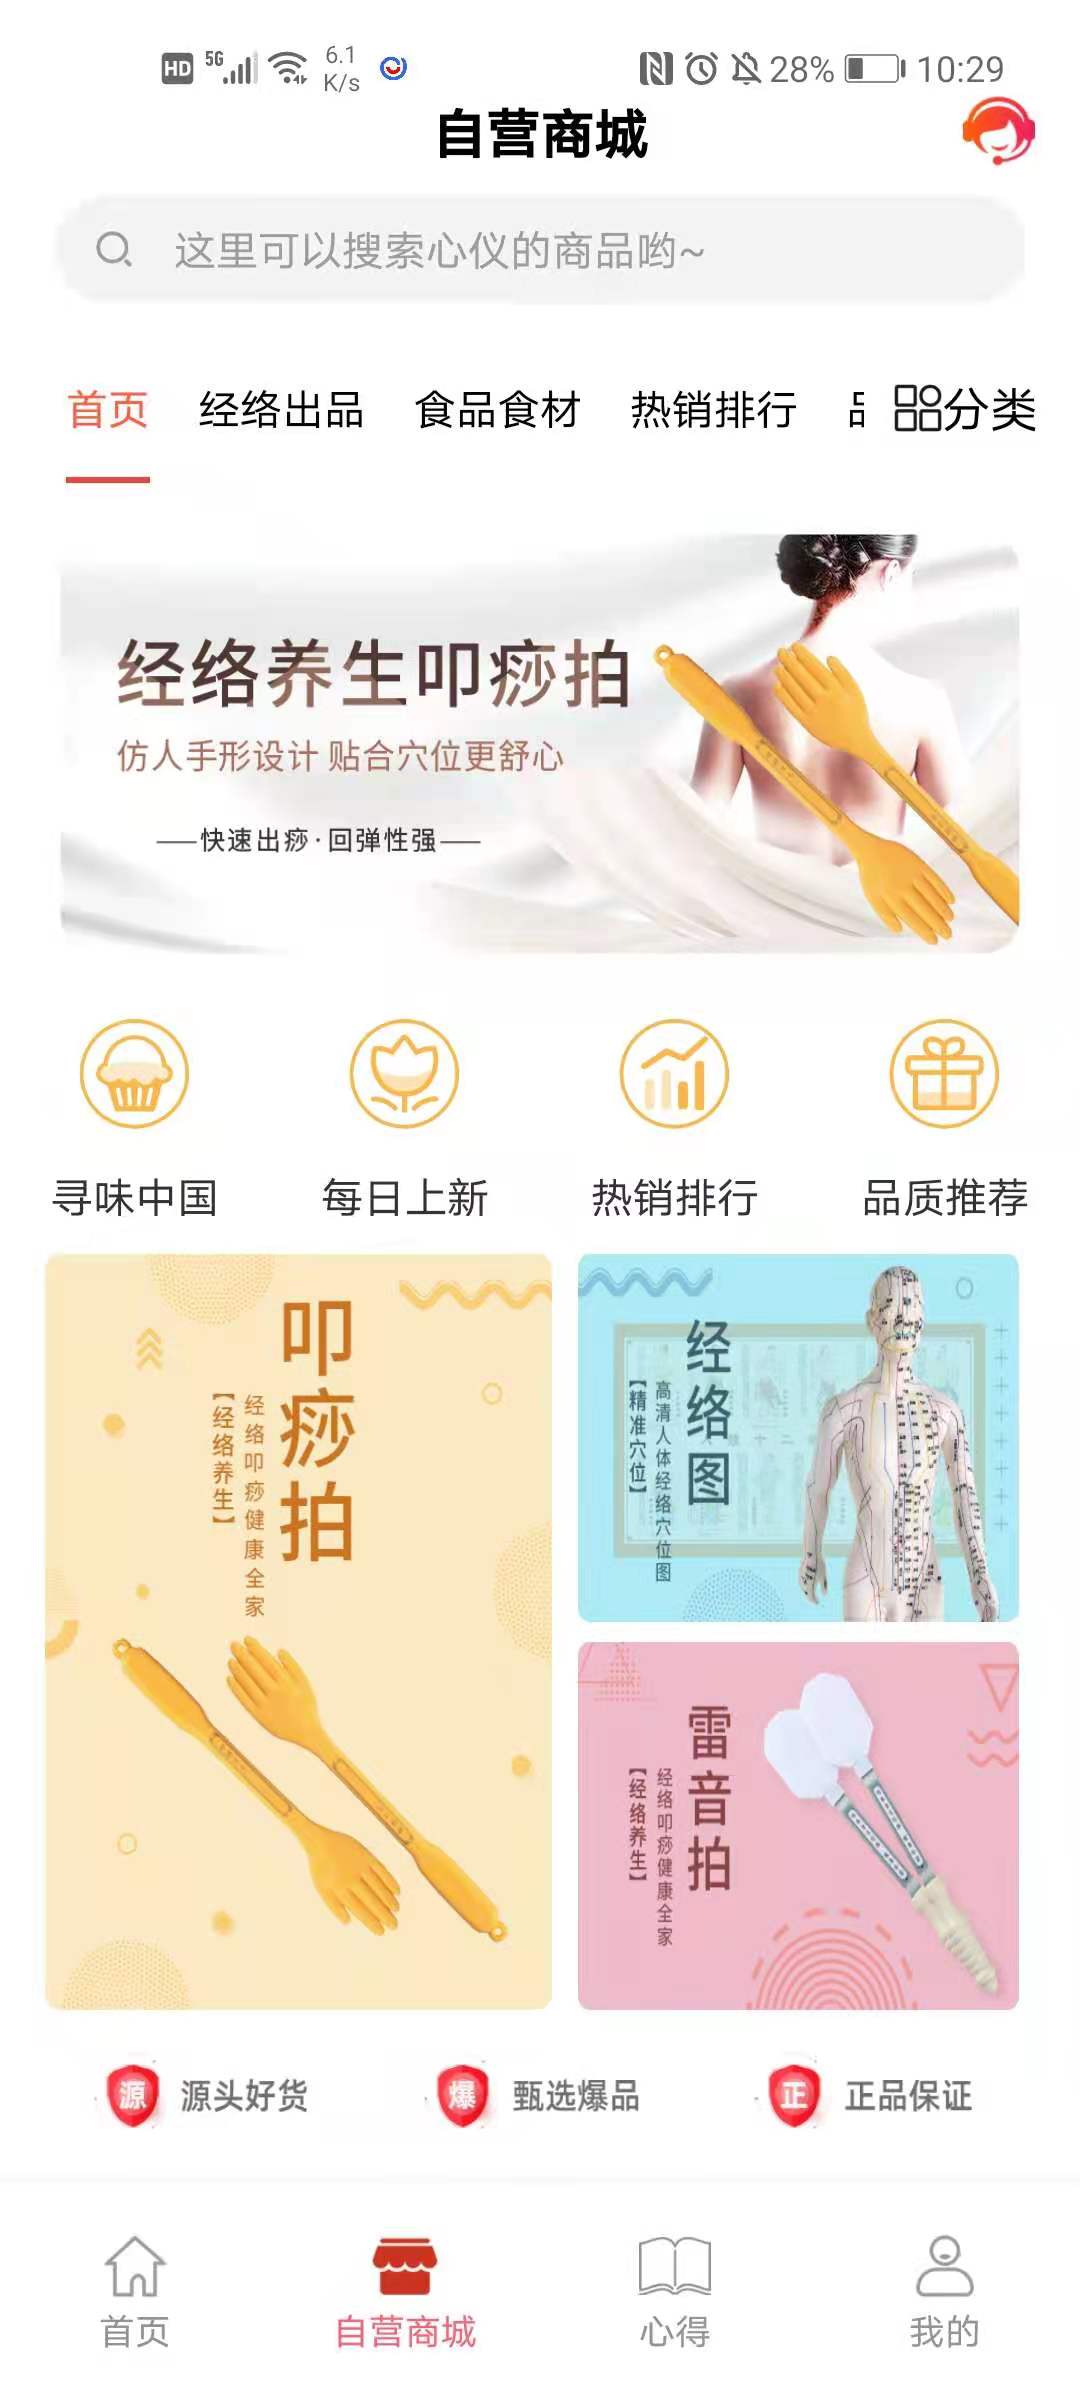 健康帮驿站App最新版图片1